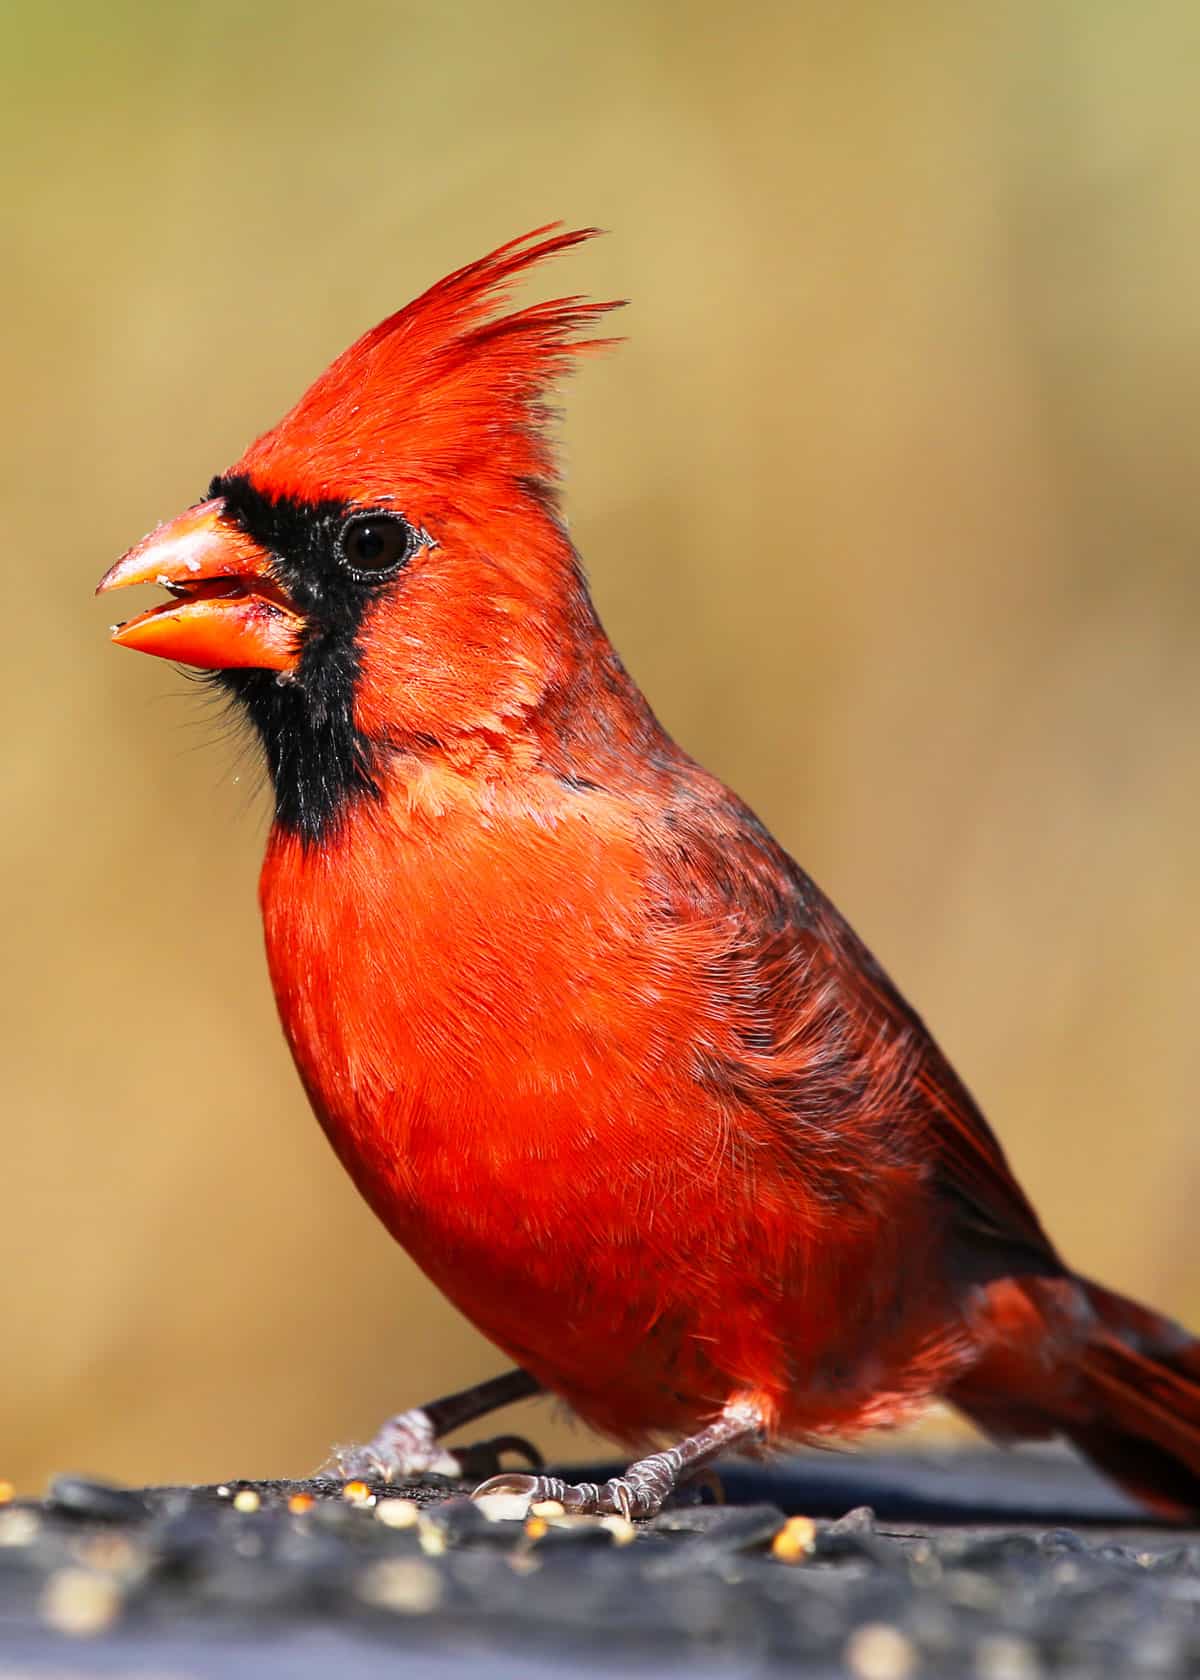 Cardenal cardenal. Es posible que conozca a los cardenales por algunas tarjetas de felicitación de invierno muy hermosas. Nativas del este y centro de Estados Unidos y Canadá, estas pequeñas bellezas se pueden ver en bosques, así como en parques y jardines urbanos, buscando semillas e insectos.